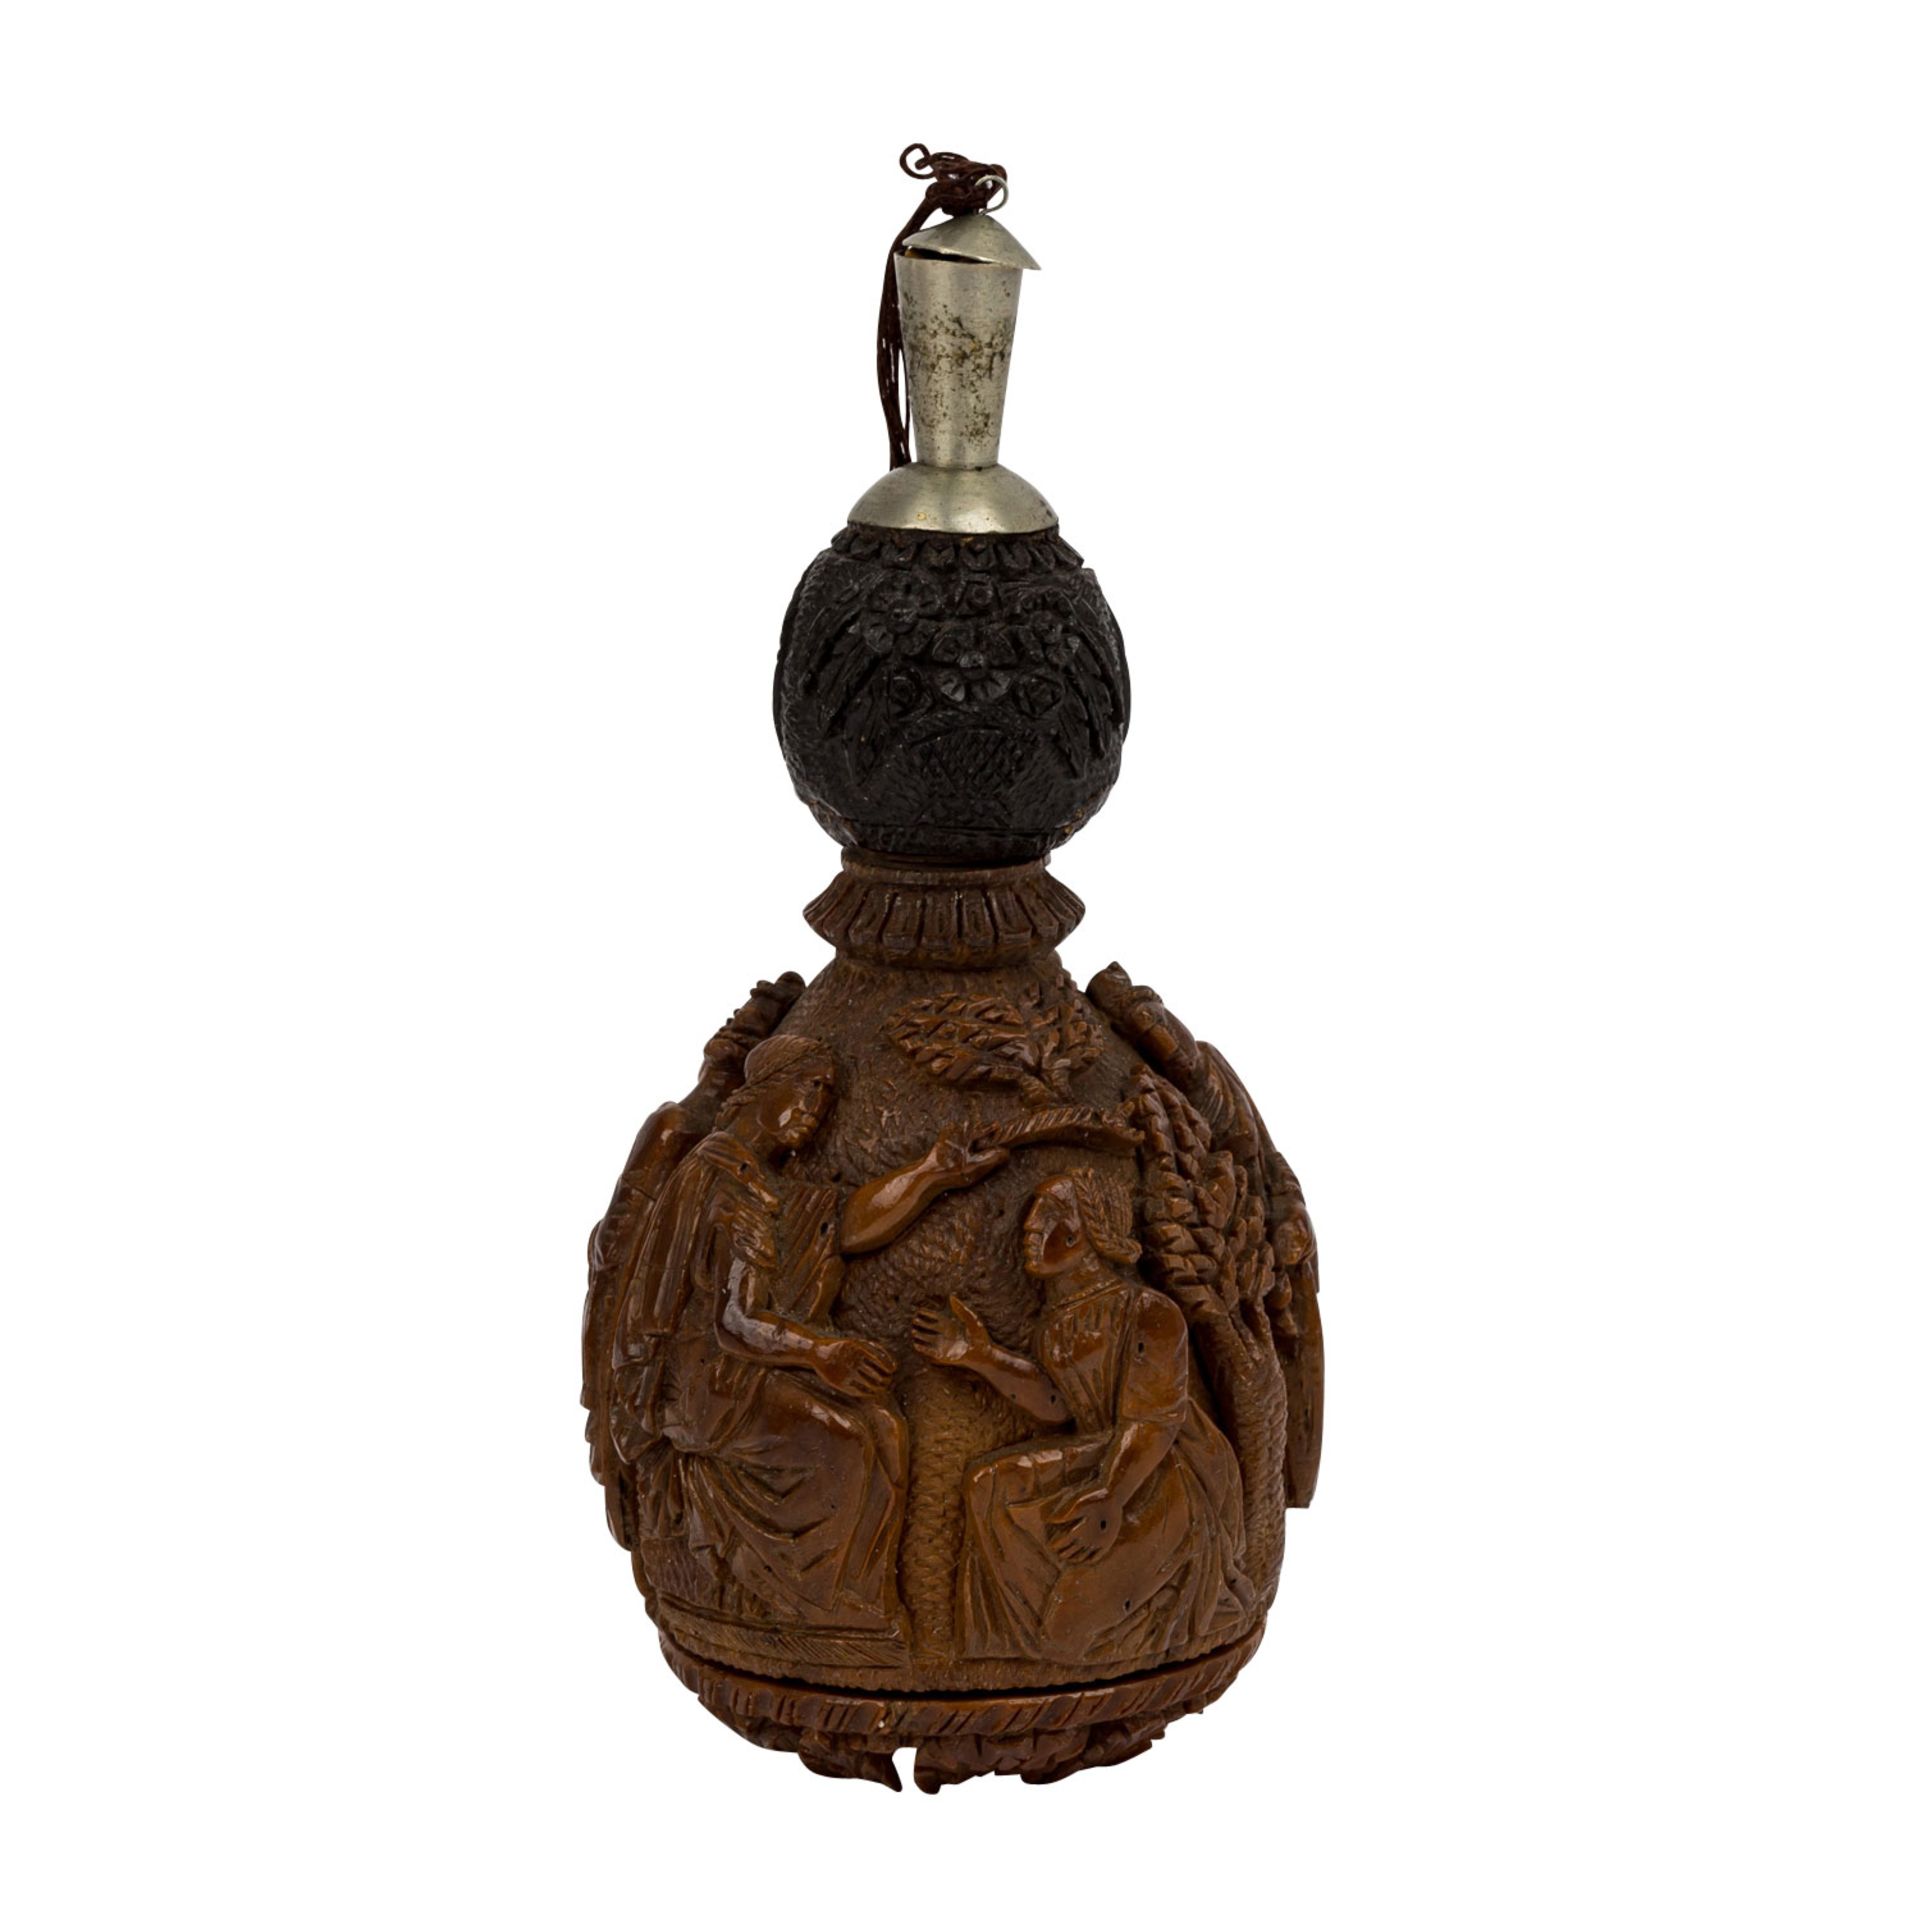 Snuff bottle aus Holz. CHINA, um 1900. - Bild 2 aus 6